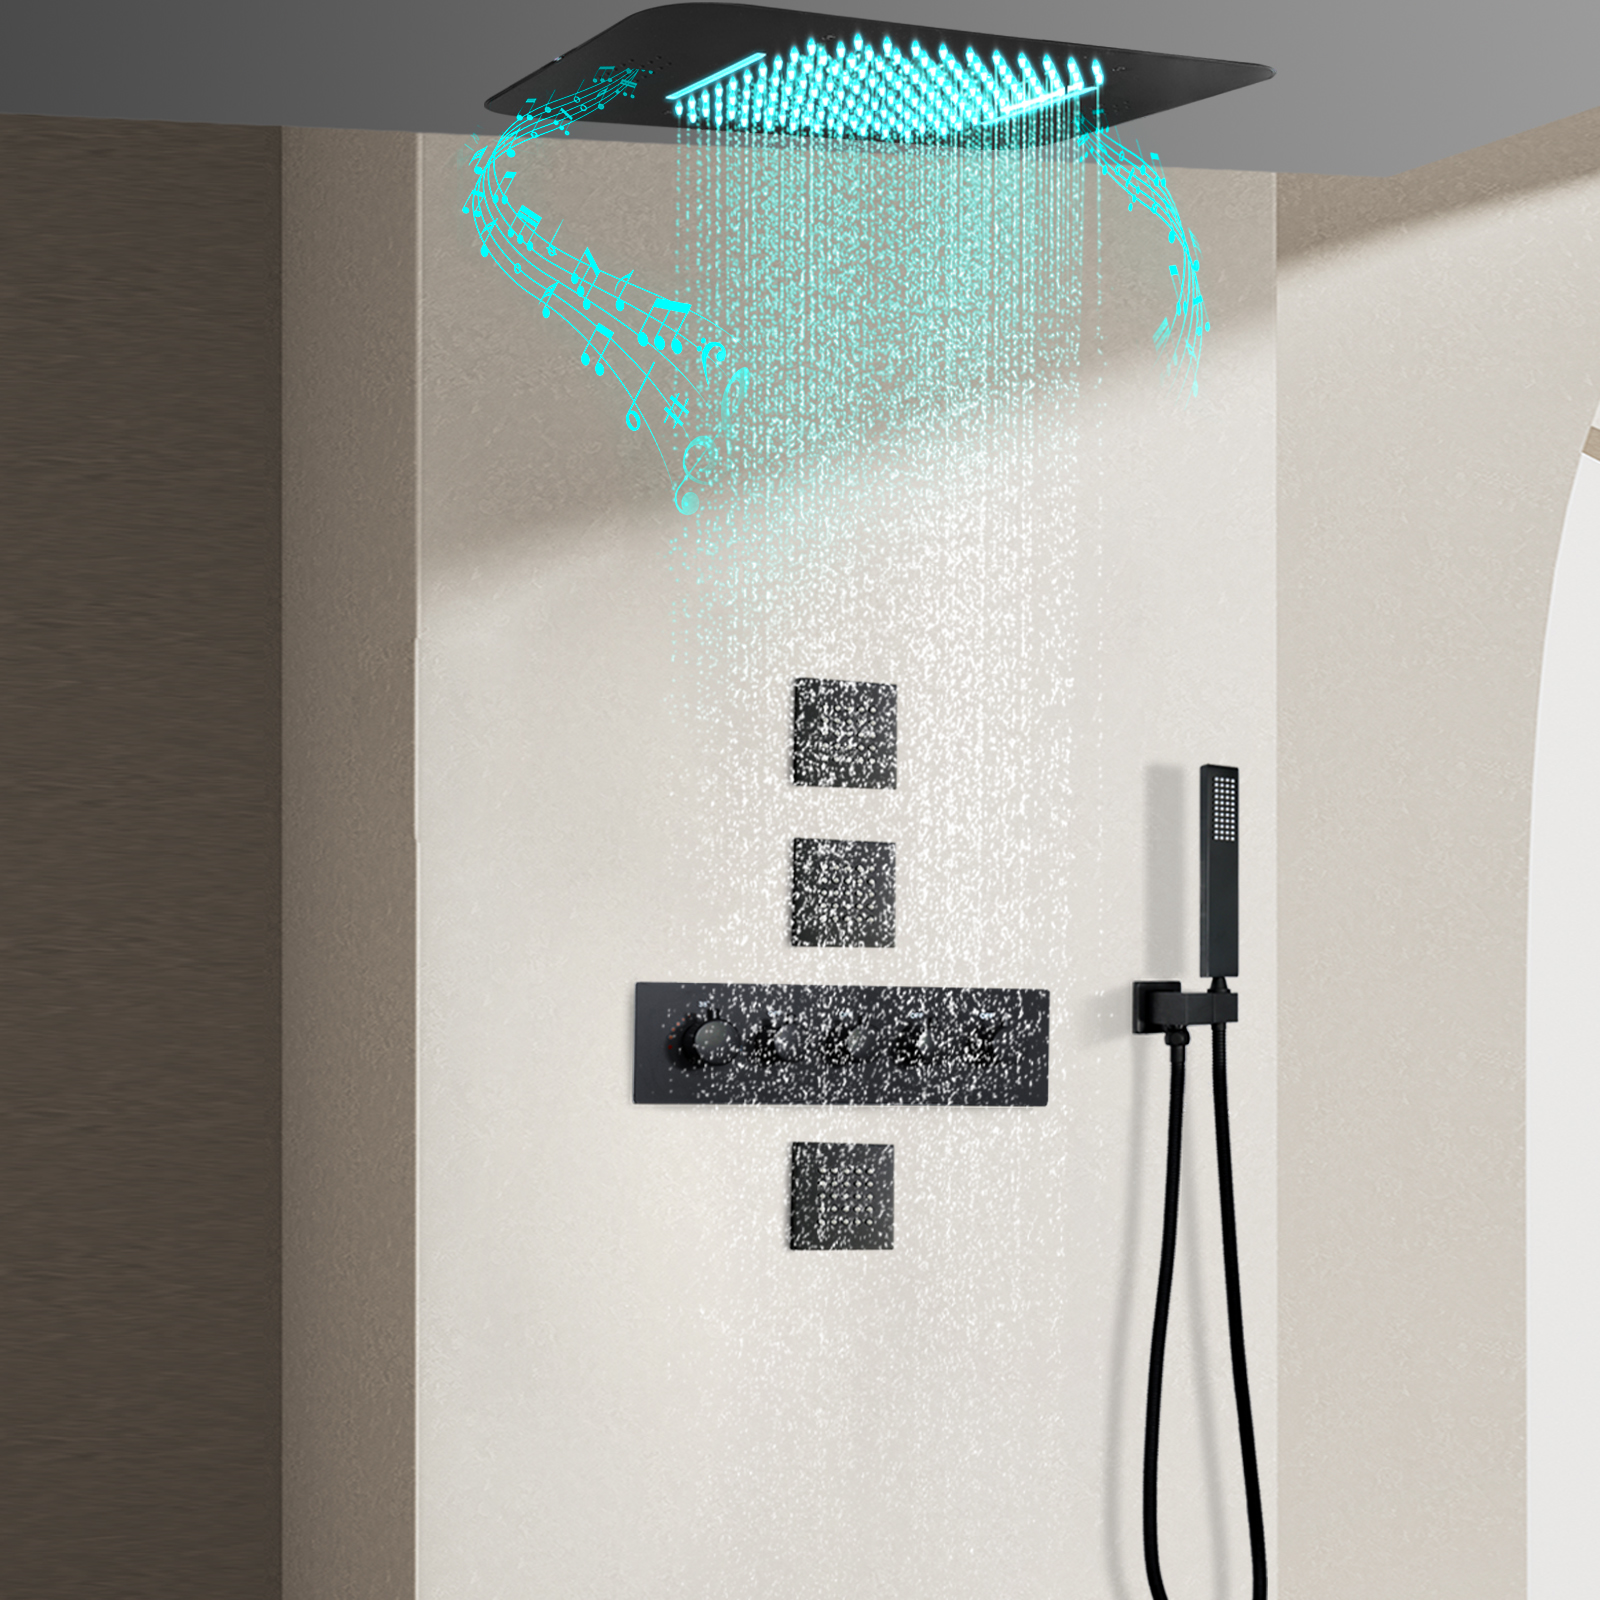 مجموعة دش LED متعددة الوظائف لحوض الاستحمام بالحرارة من Black Music مع دش يدوي